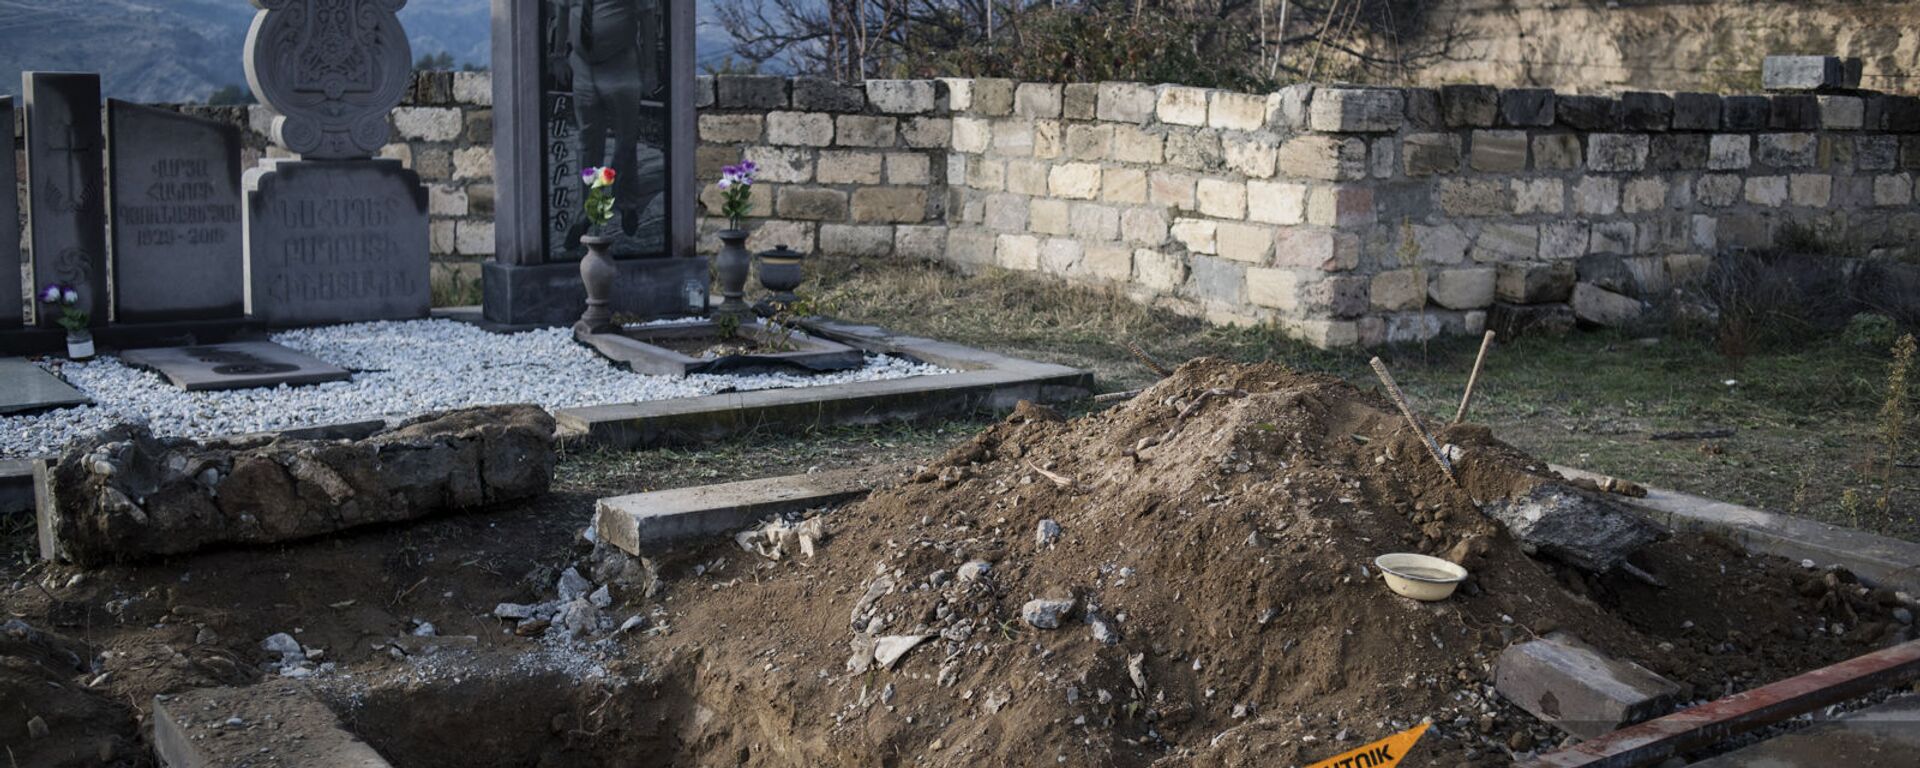 Могилы на кладбище после извлечения останков захороненных жителей в городе Бердзор (30 ноября 2020). Карабах - Sputnik Армения, 1920, 15.11.2021